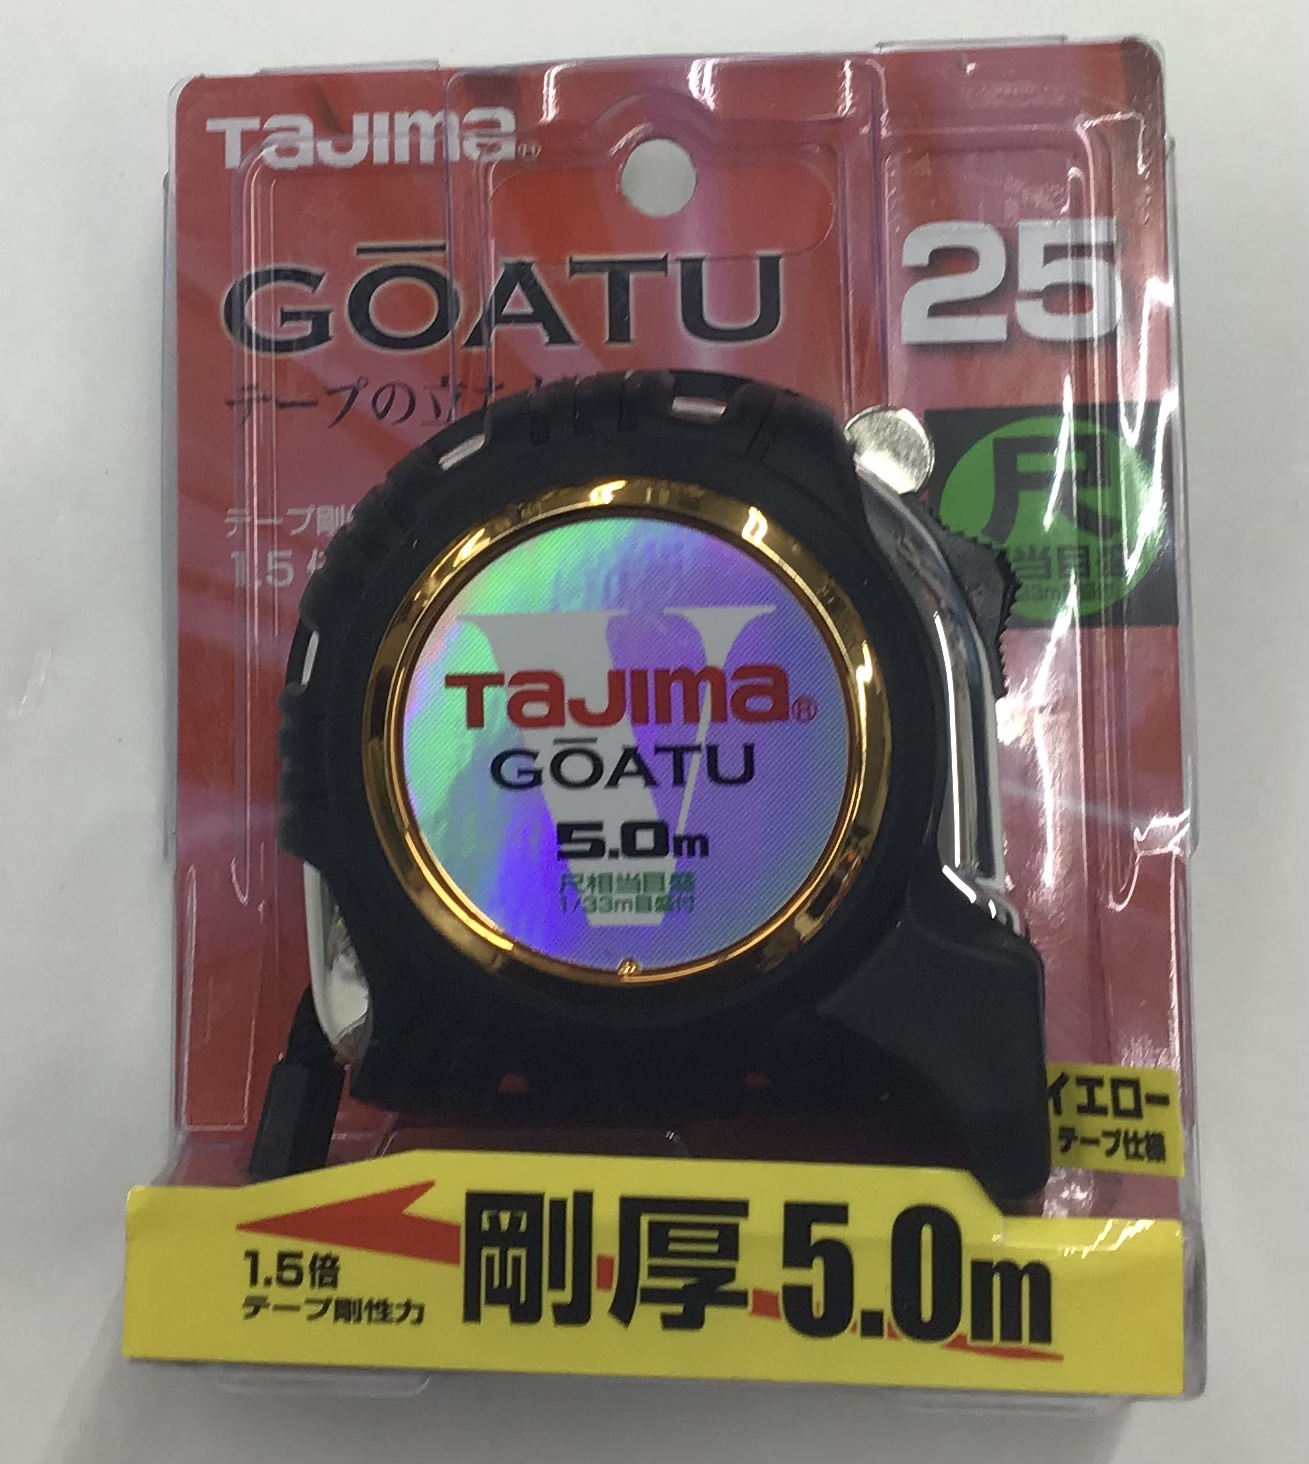 タジマ Tajima スケール 剛厚Gロック-25 GAGL2550S×11個自転車